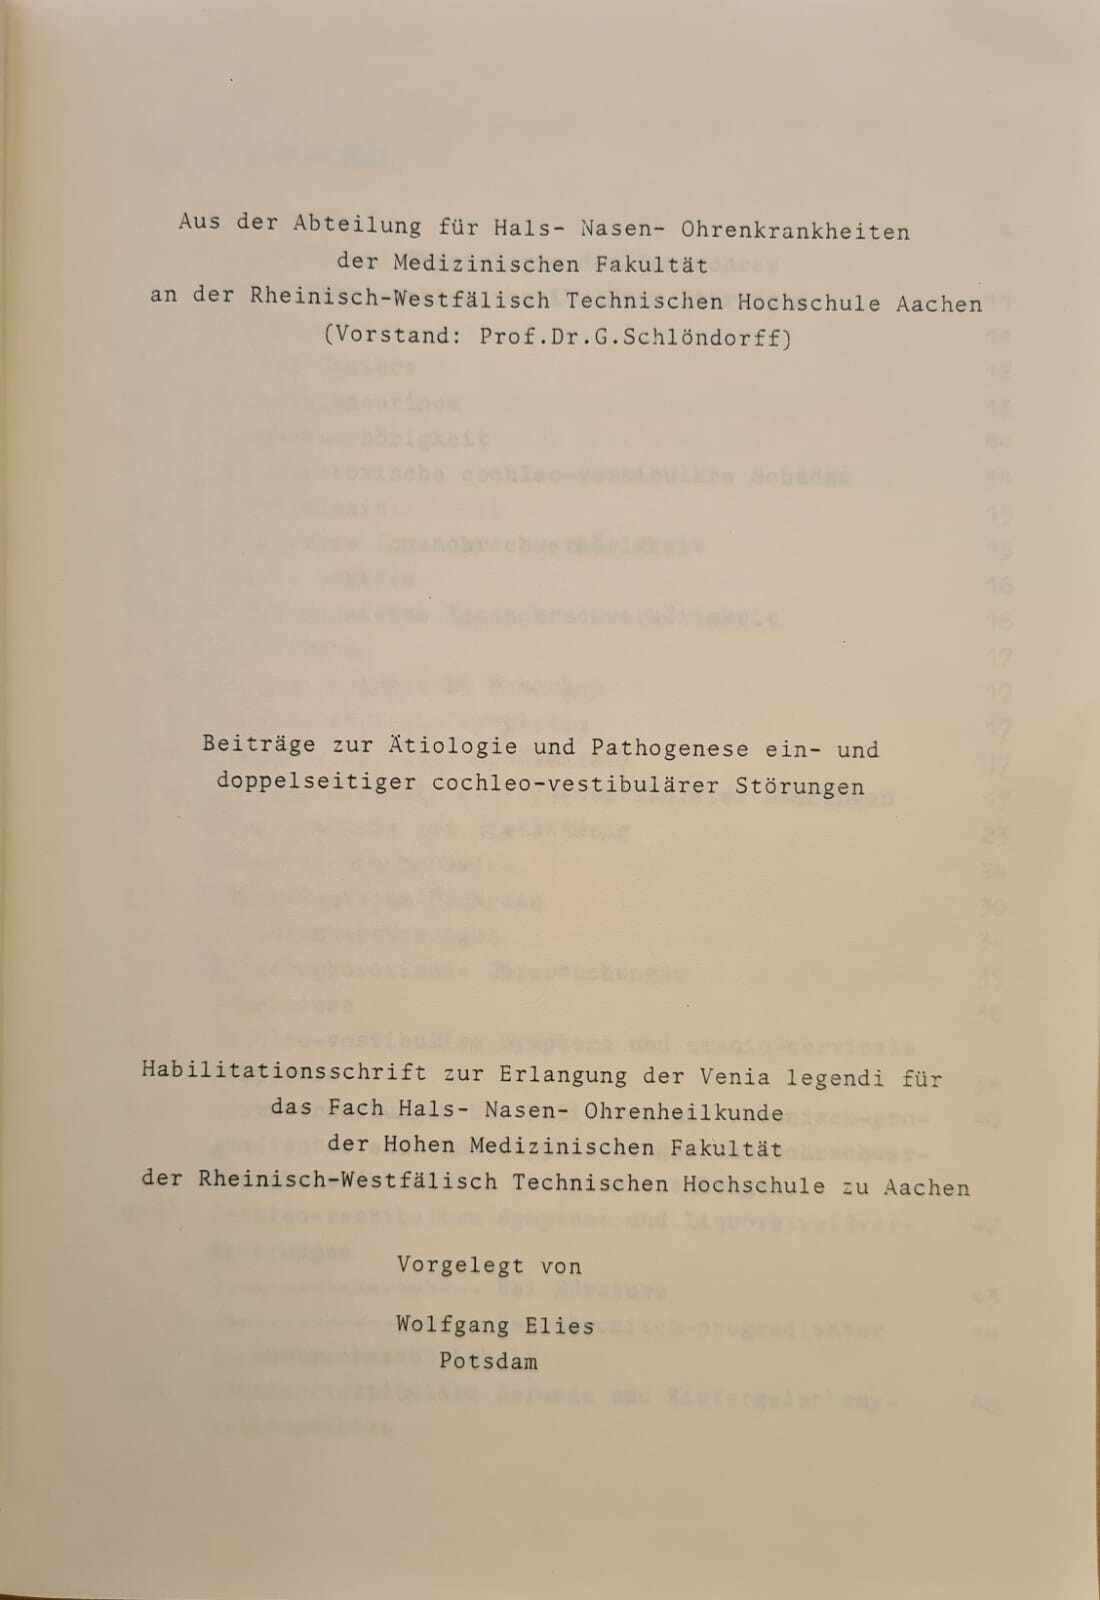 Beiträge zur Ätiologie und Pathogenese ein- und doppelseitiger cochleo-vestibulärer Störungen (Krankenhausmuseum Bielefeld e.V. CC BY-NC-SA)